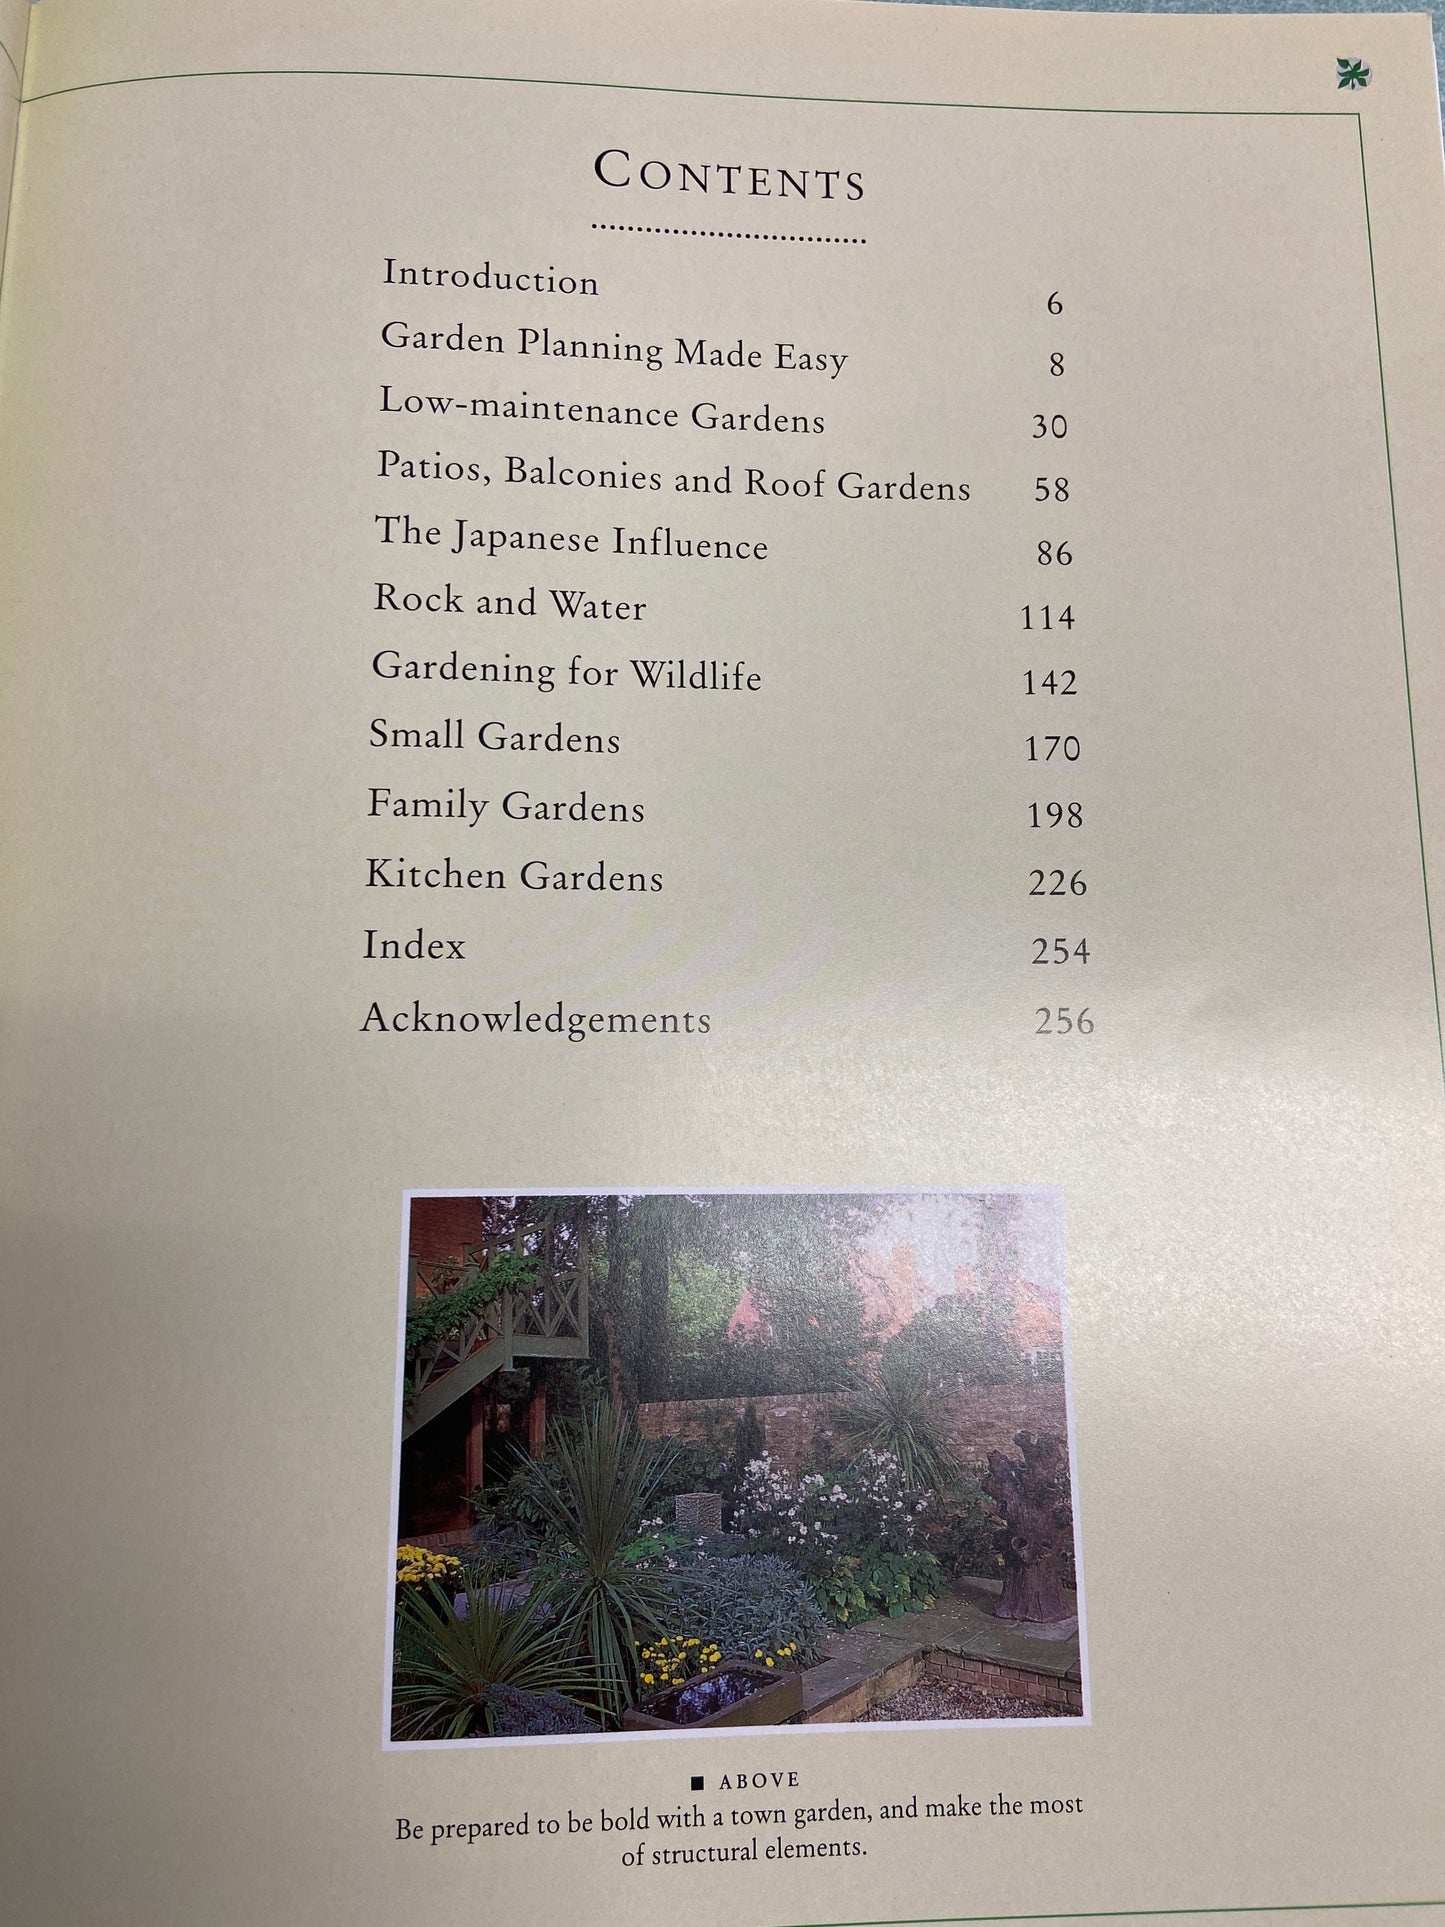 Vintage Garden Book - The Complete Garden Planning Book